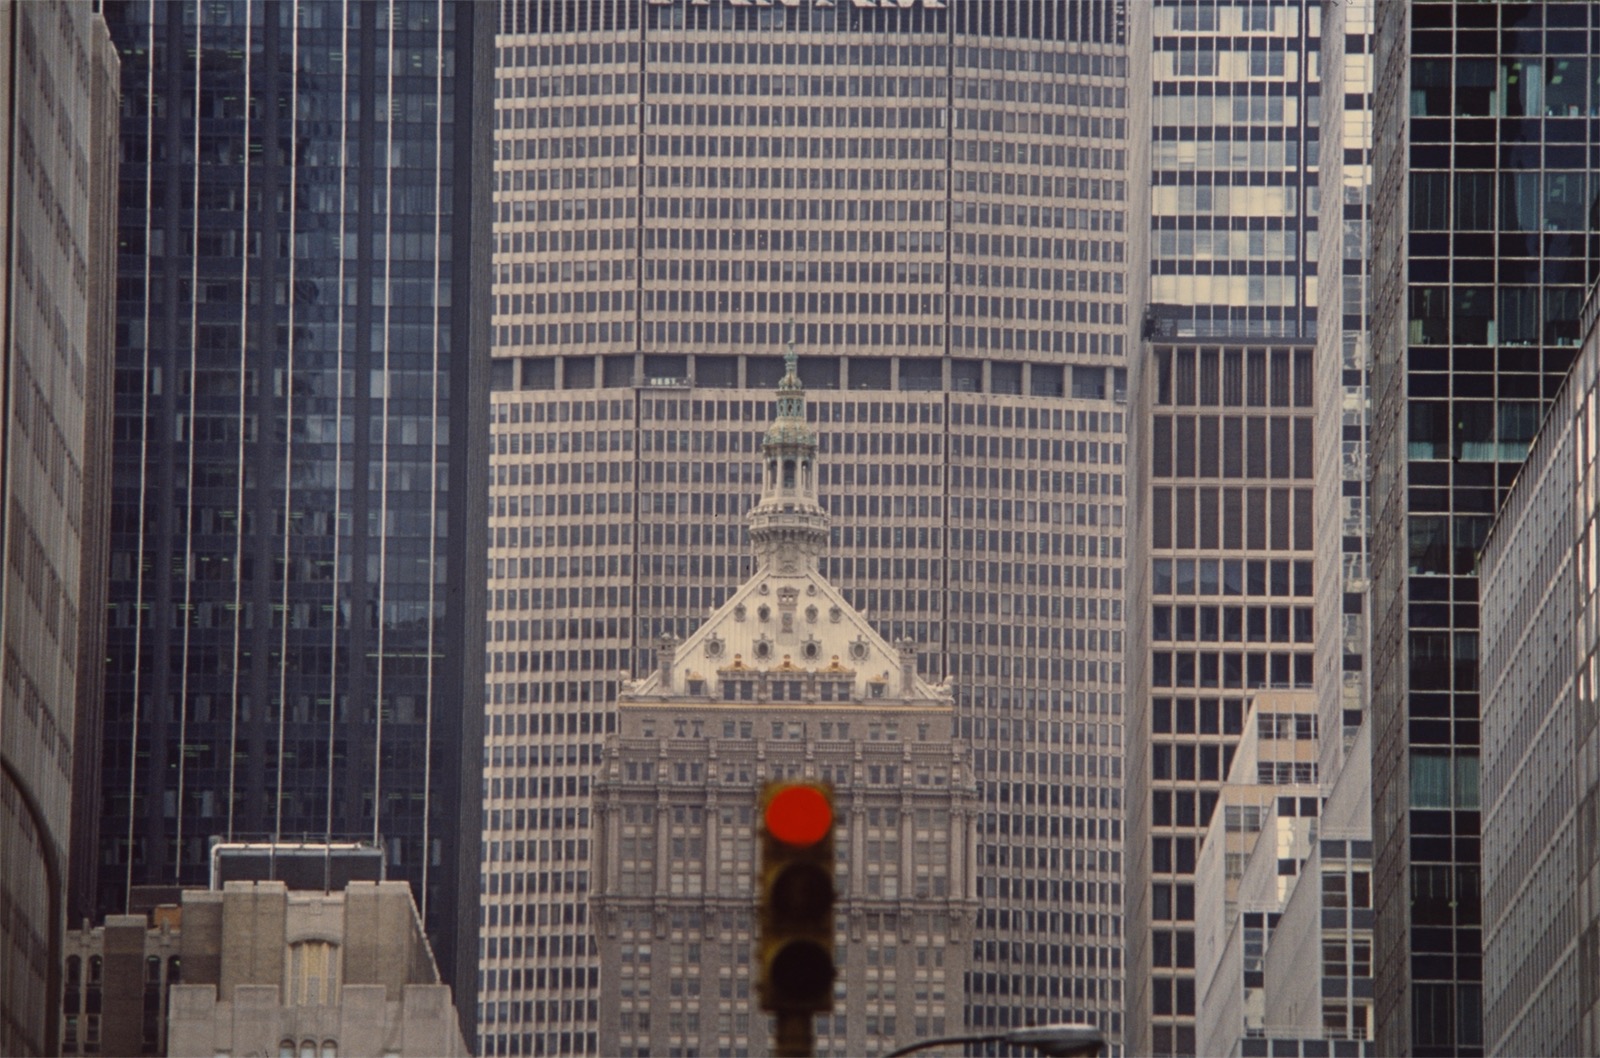 Sibylle Bergemann. ”New York”. 1984